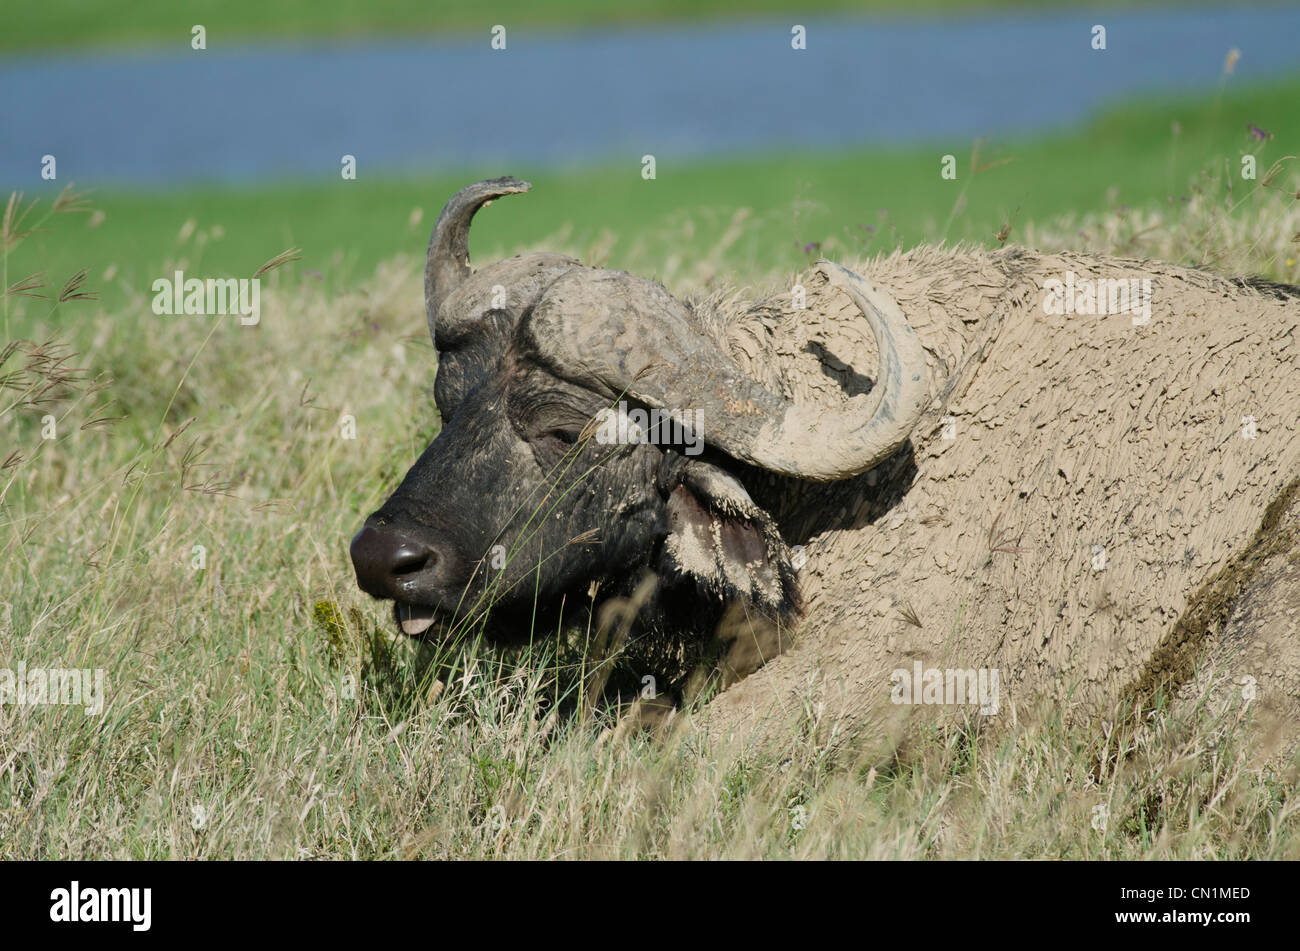 Cape buffalo covered in mud.lake nakuru ,kenya Stock Photo